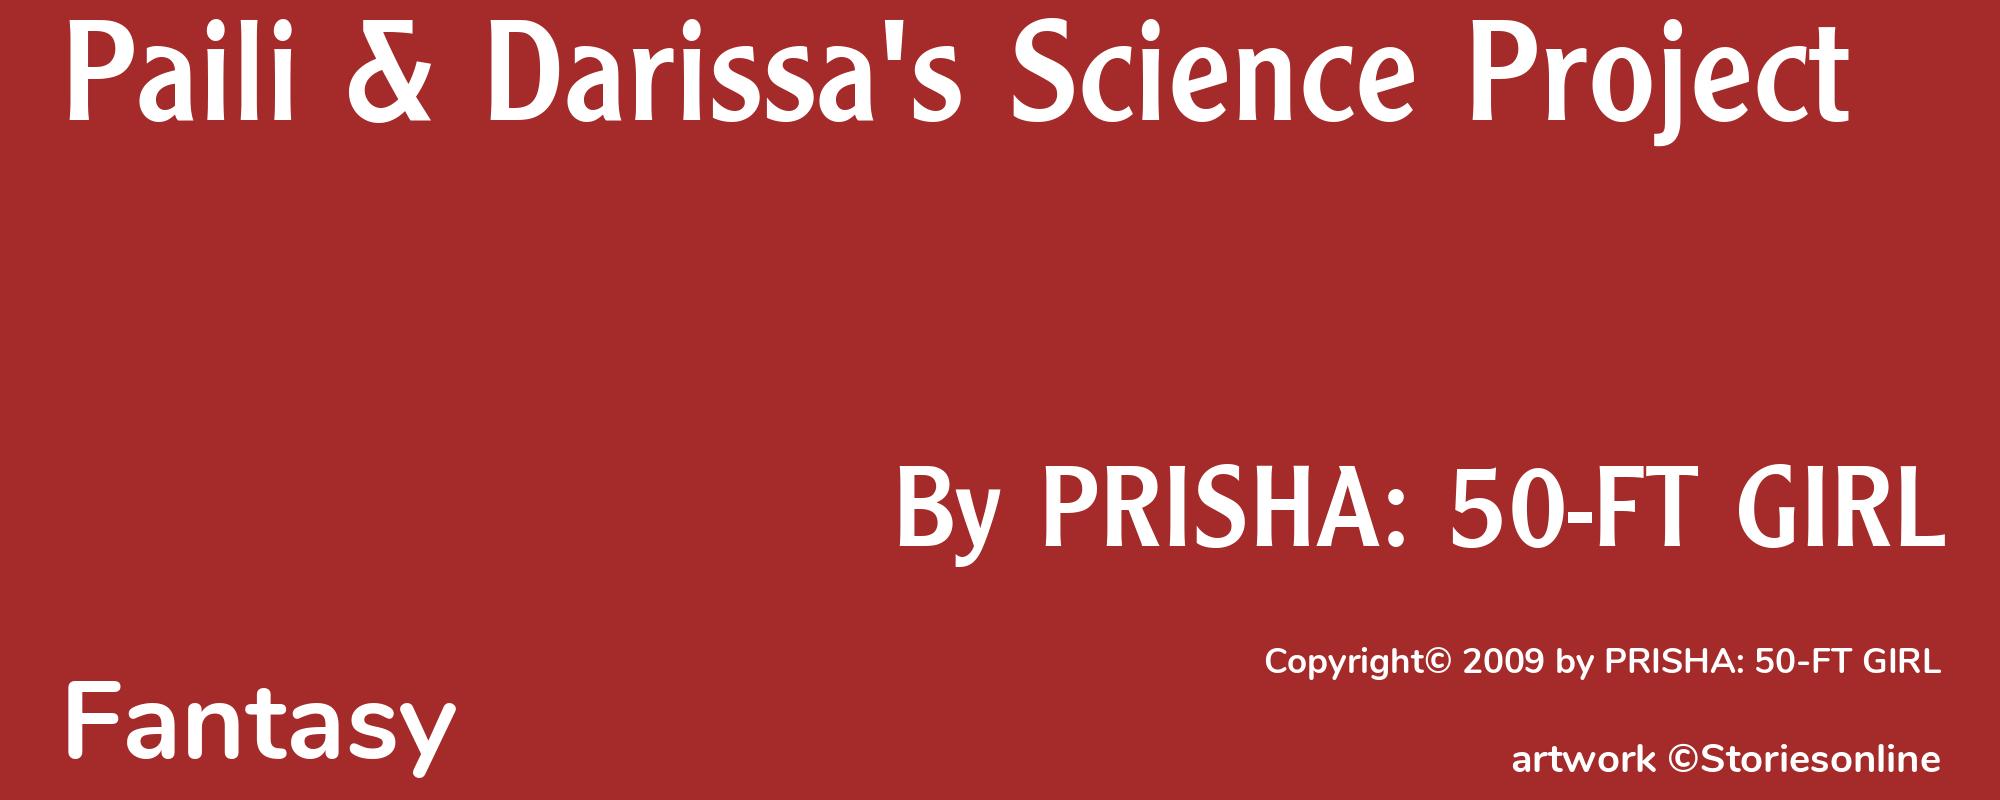 Paili & Darissa's Science Project - Cover